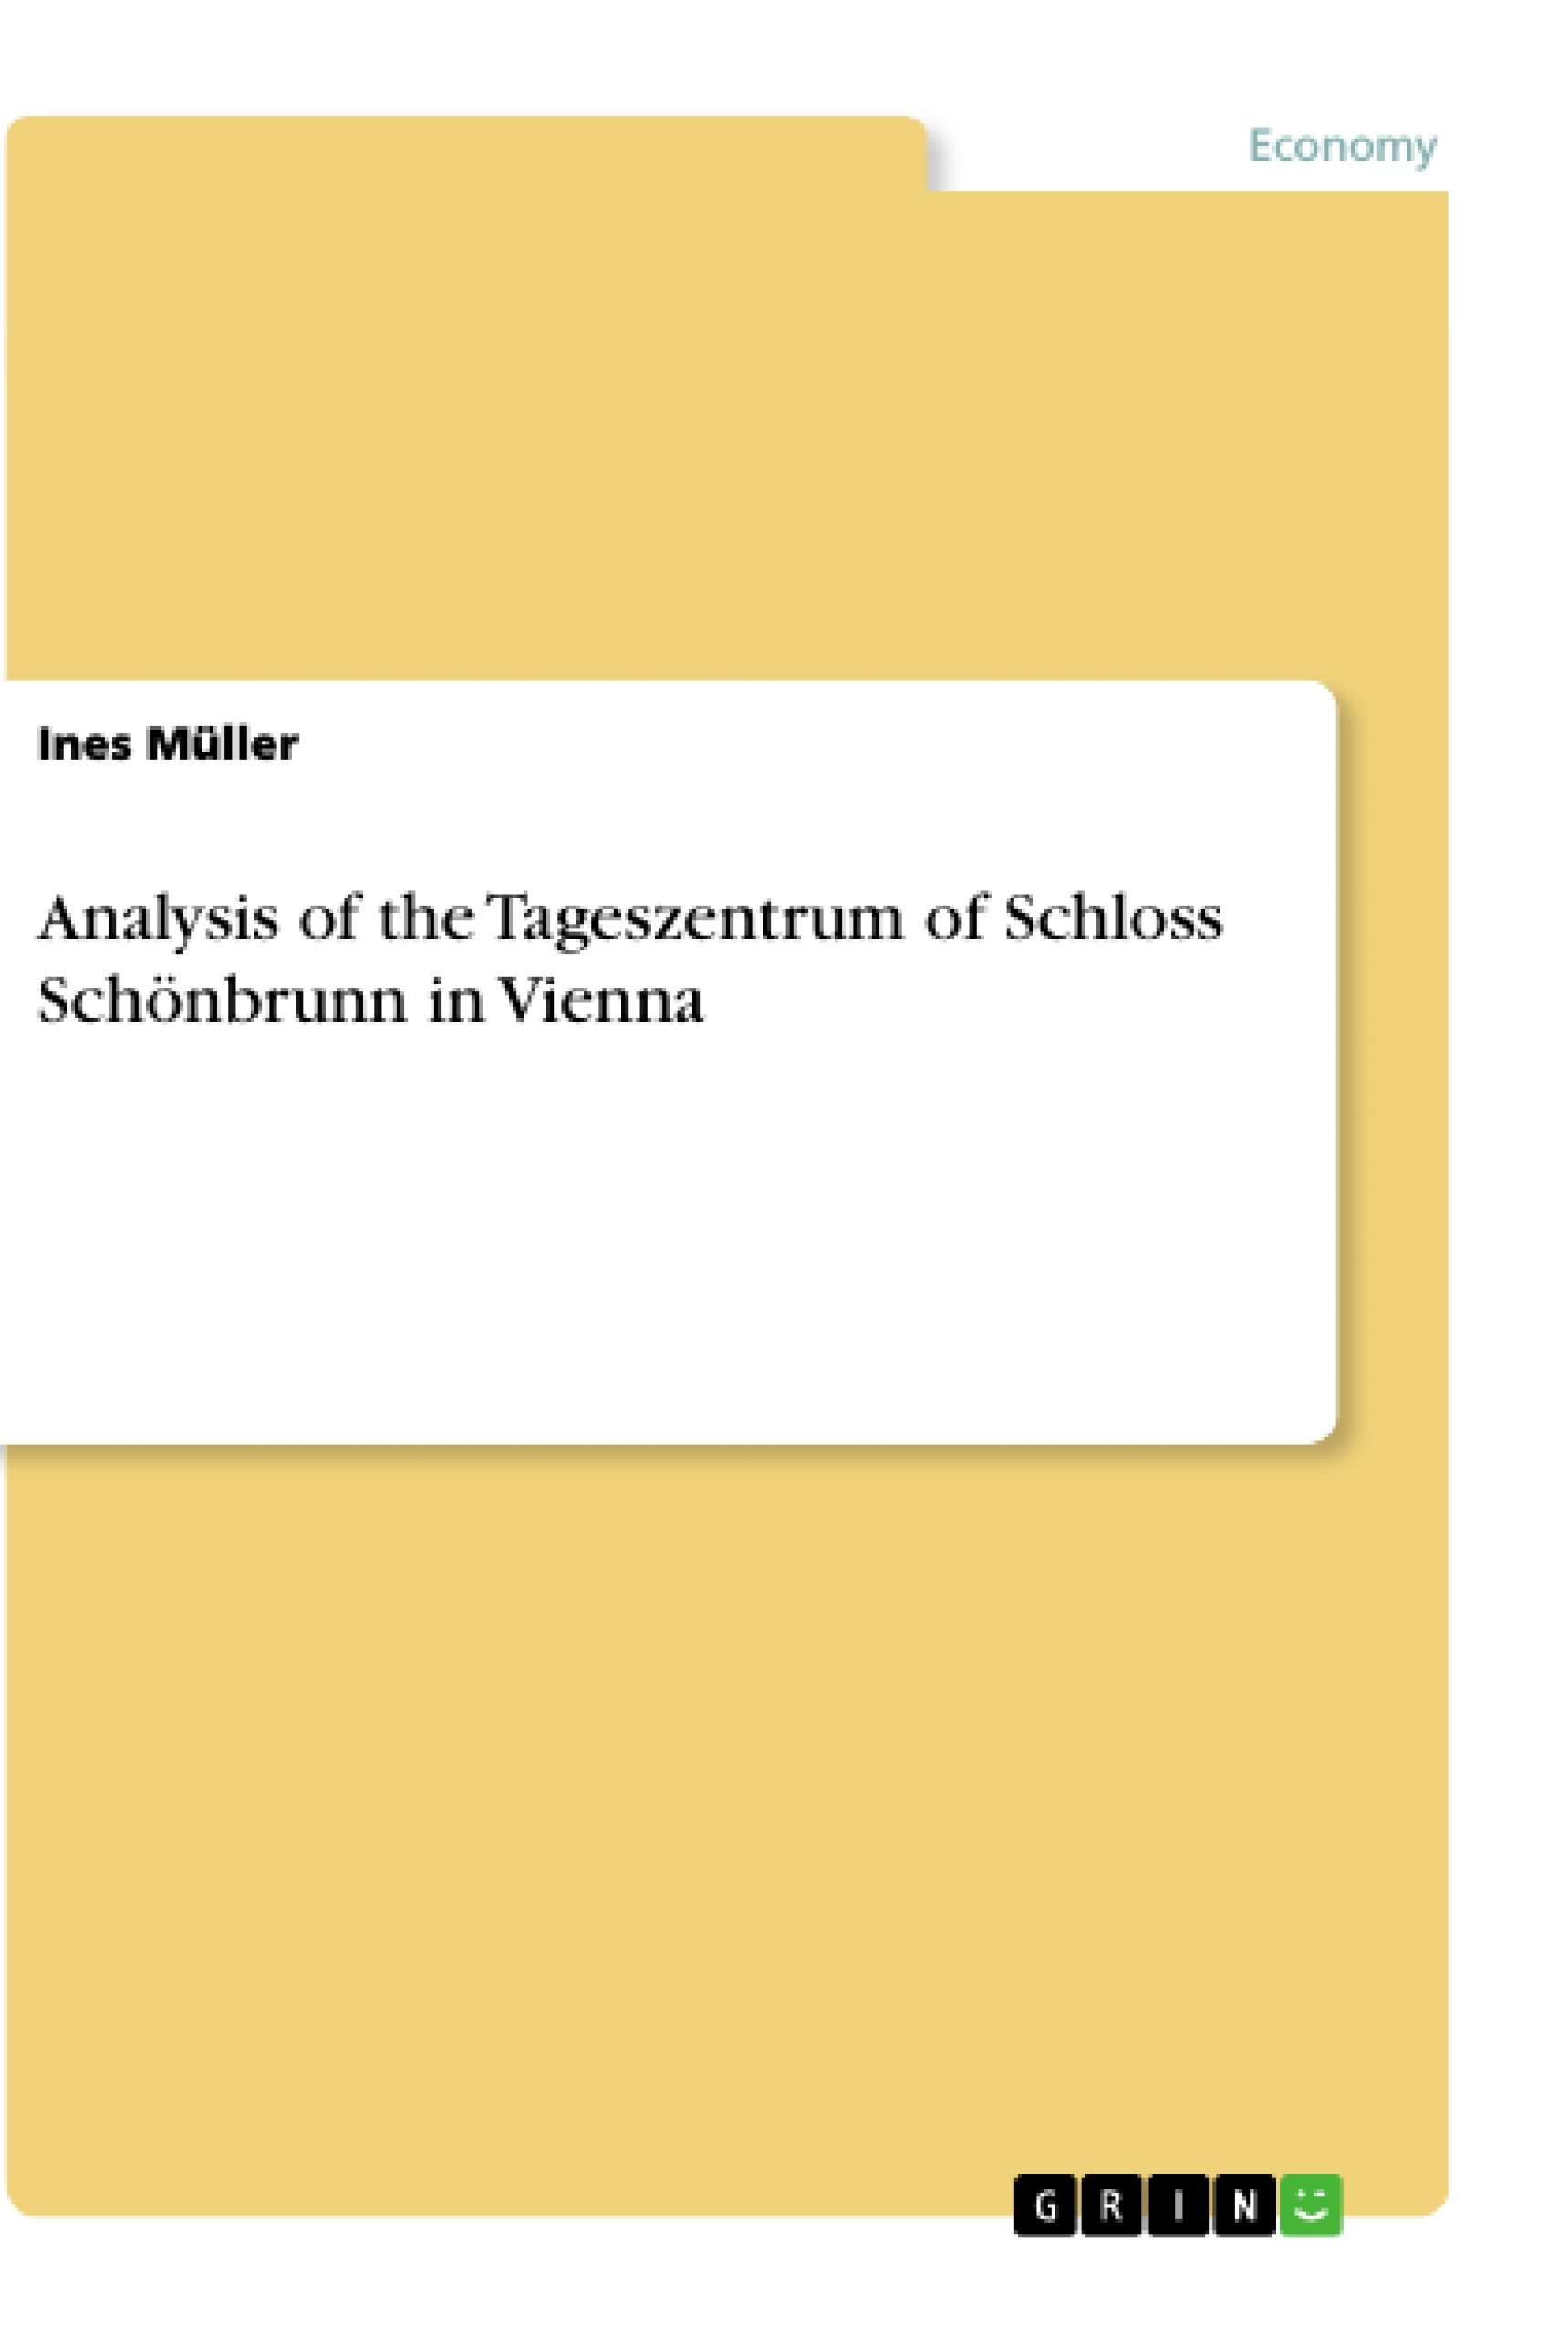 Title: Analysis of the Tageszentrum of Schloss Schönbrunn in Vienna